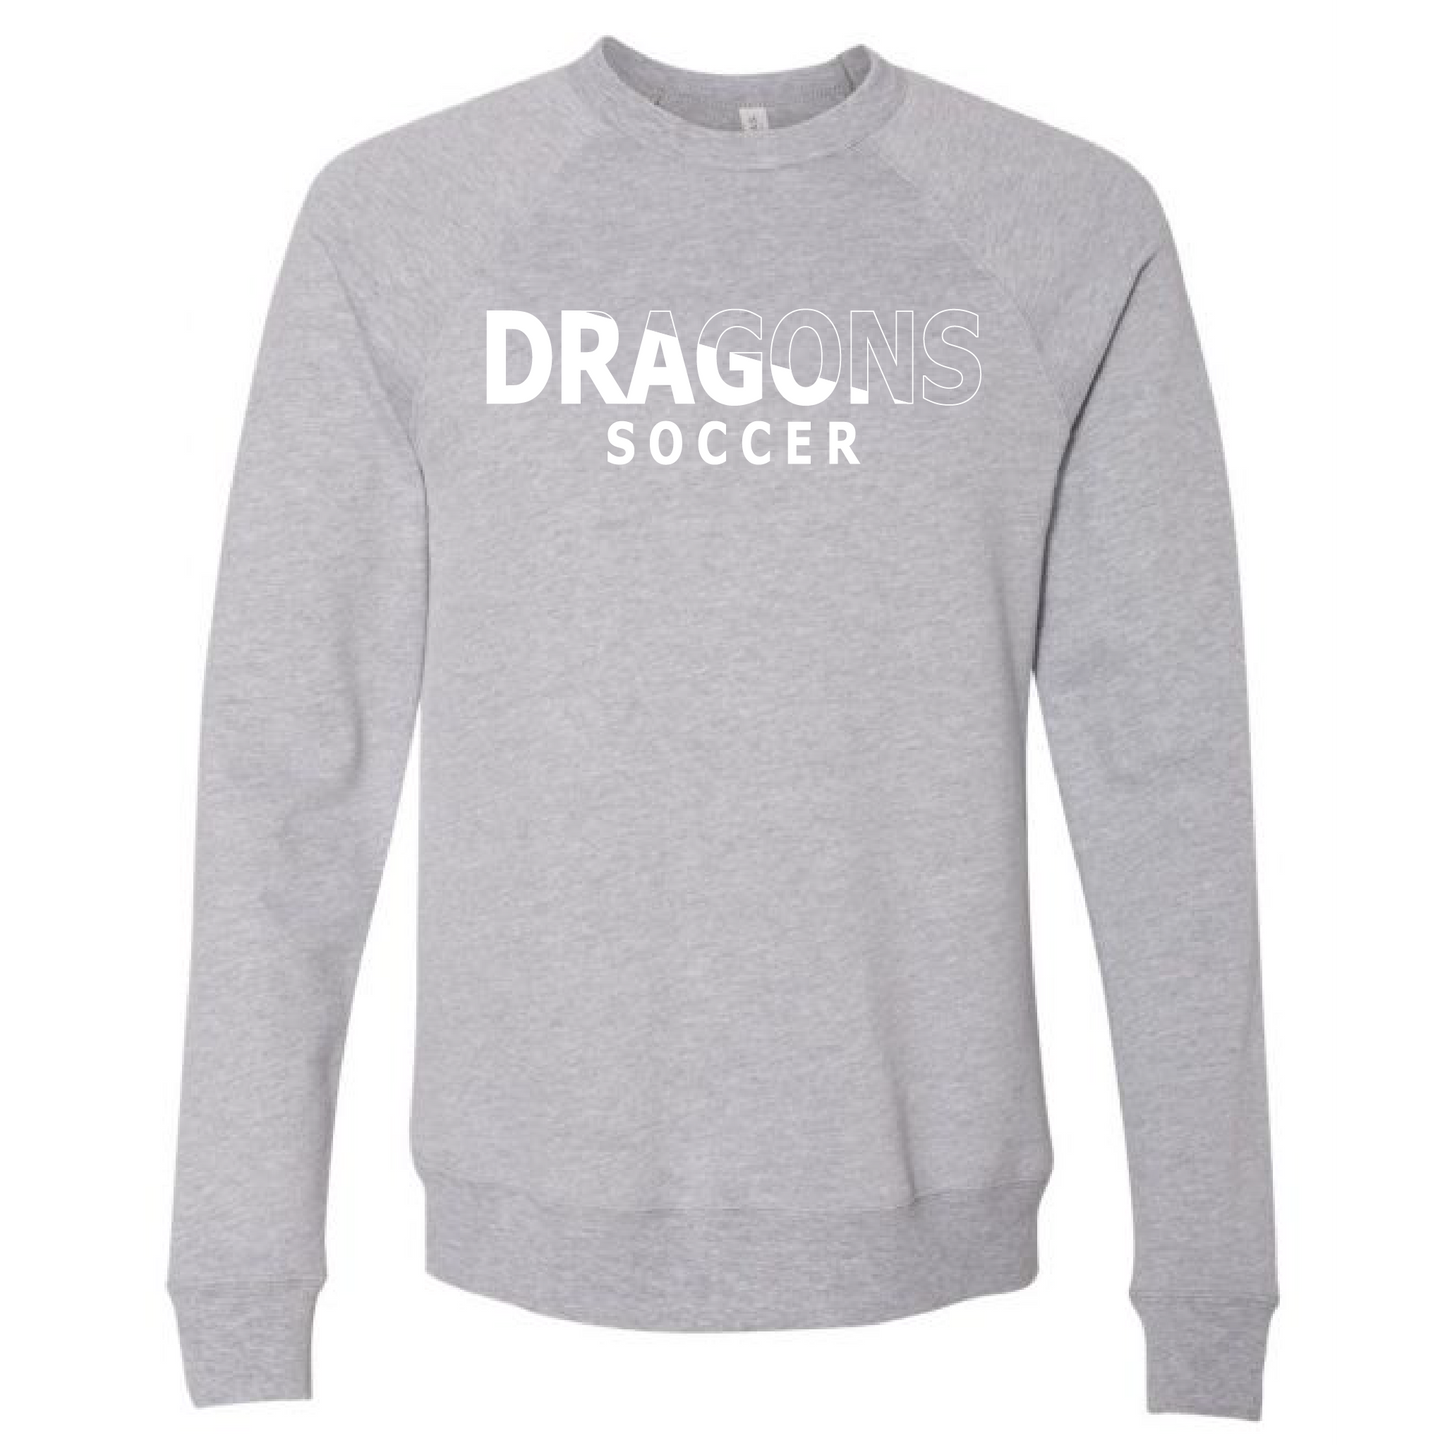 Unisex Sweatshirt - Dragons Soccer Slashed White